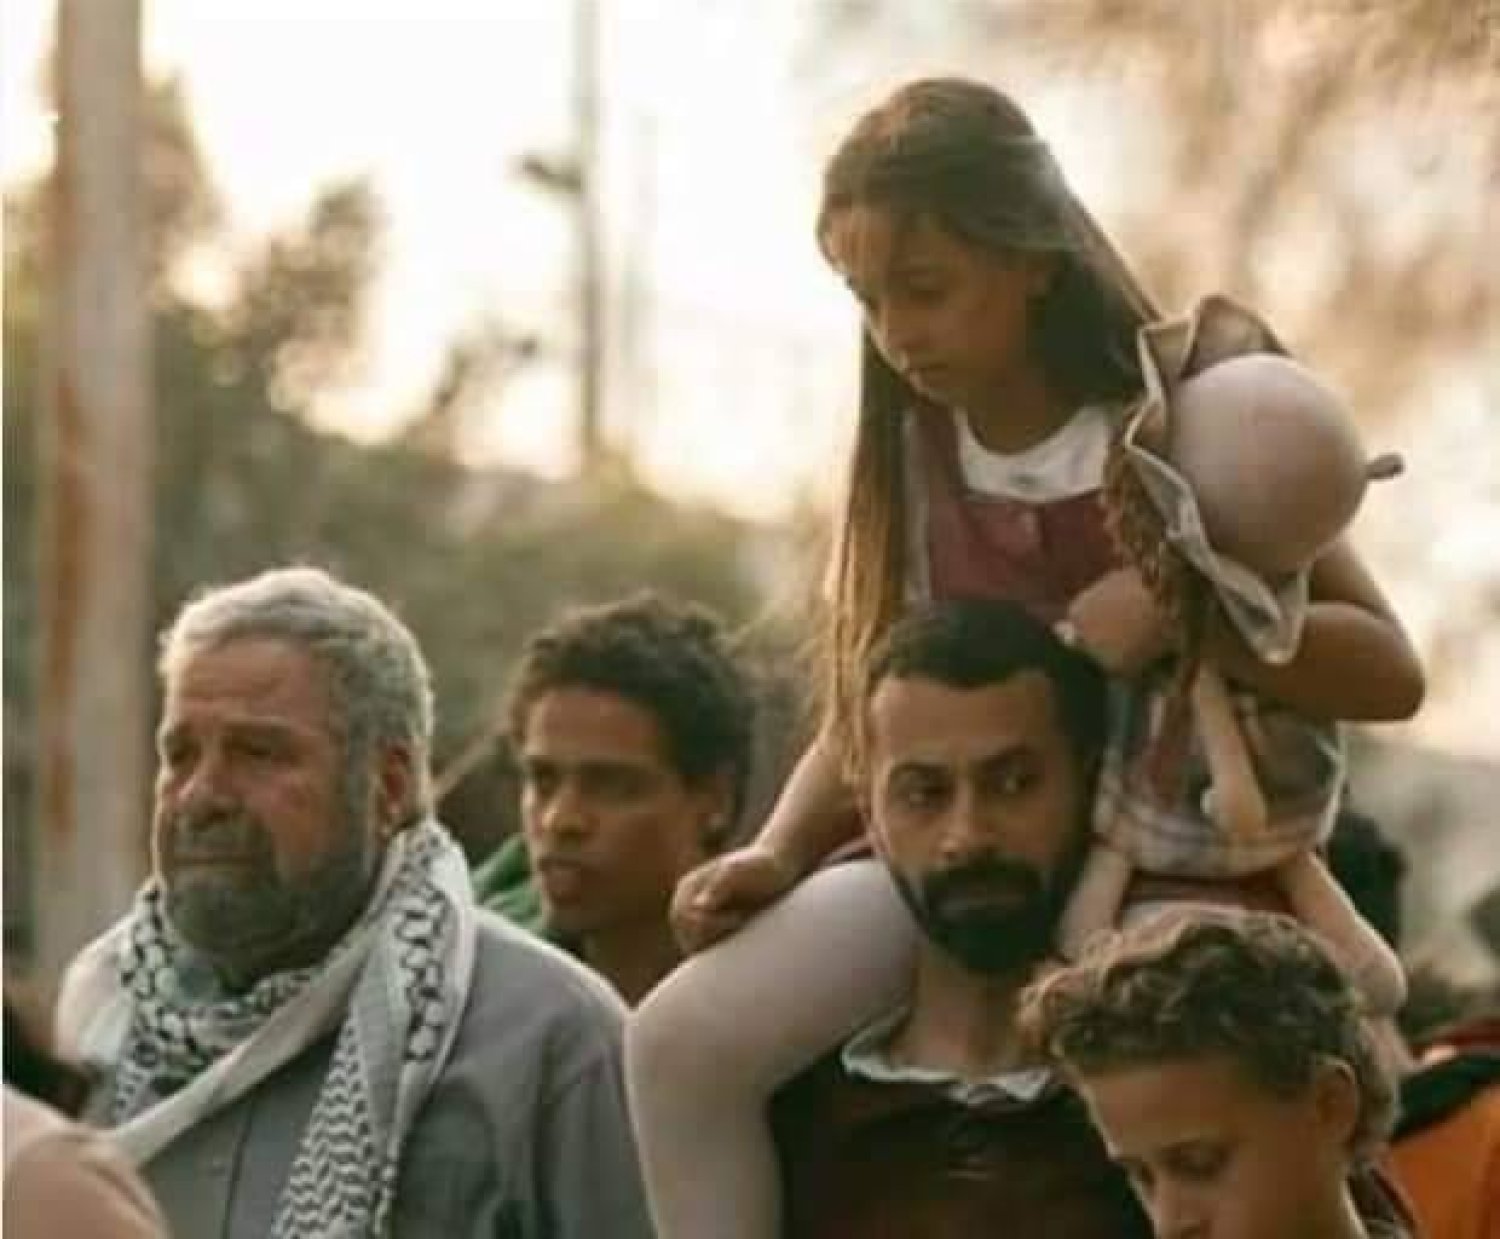 مشهد لنزوح البطلة وهي طفلة في مسلسل «مليحة» خلال الانتفاضة الفلسطينية عام 2000 (الشركة المنتجة)